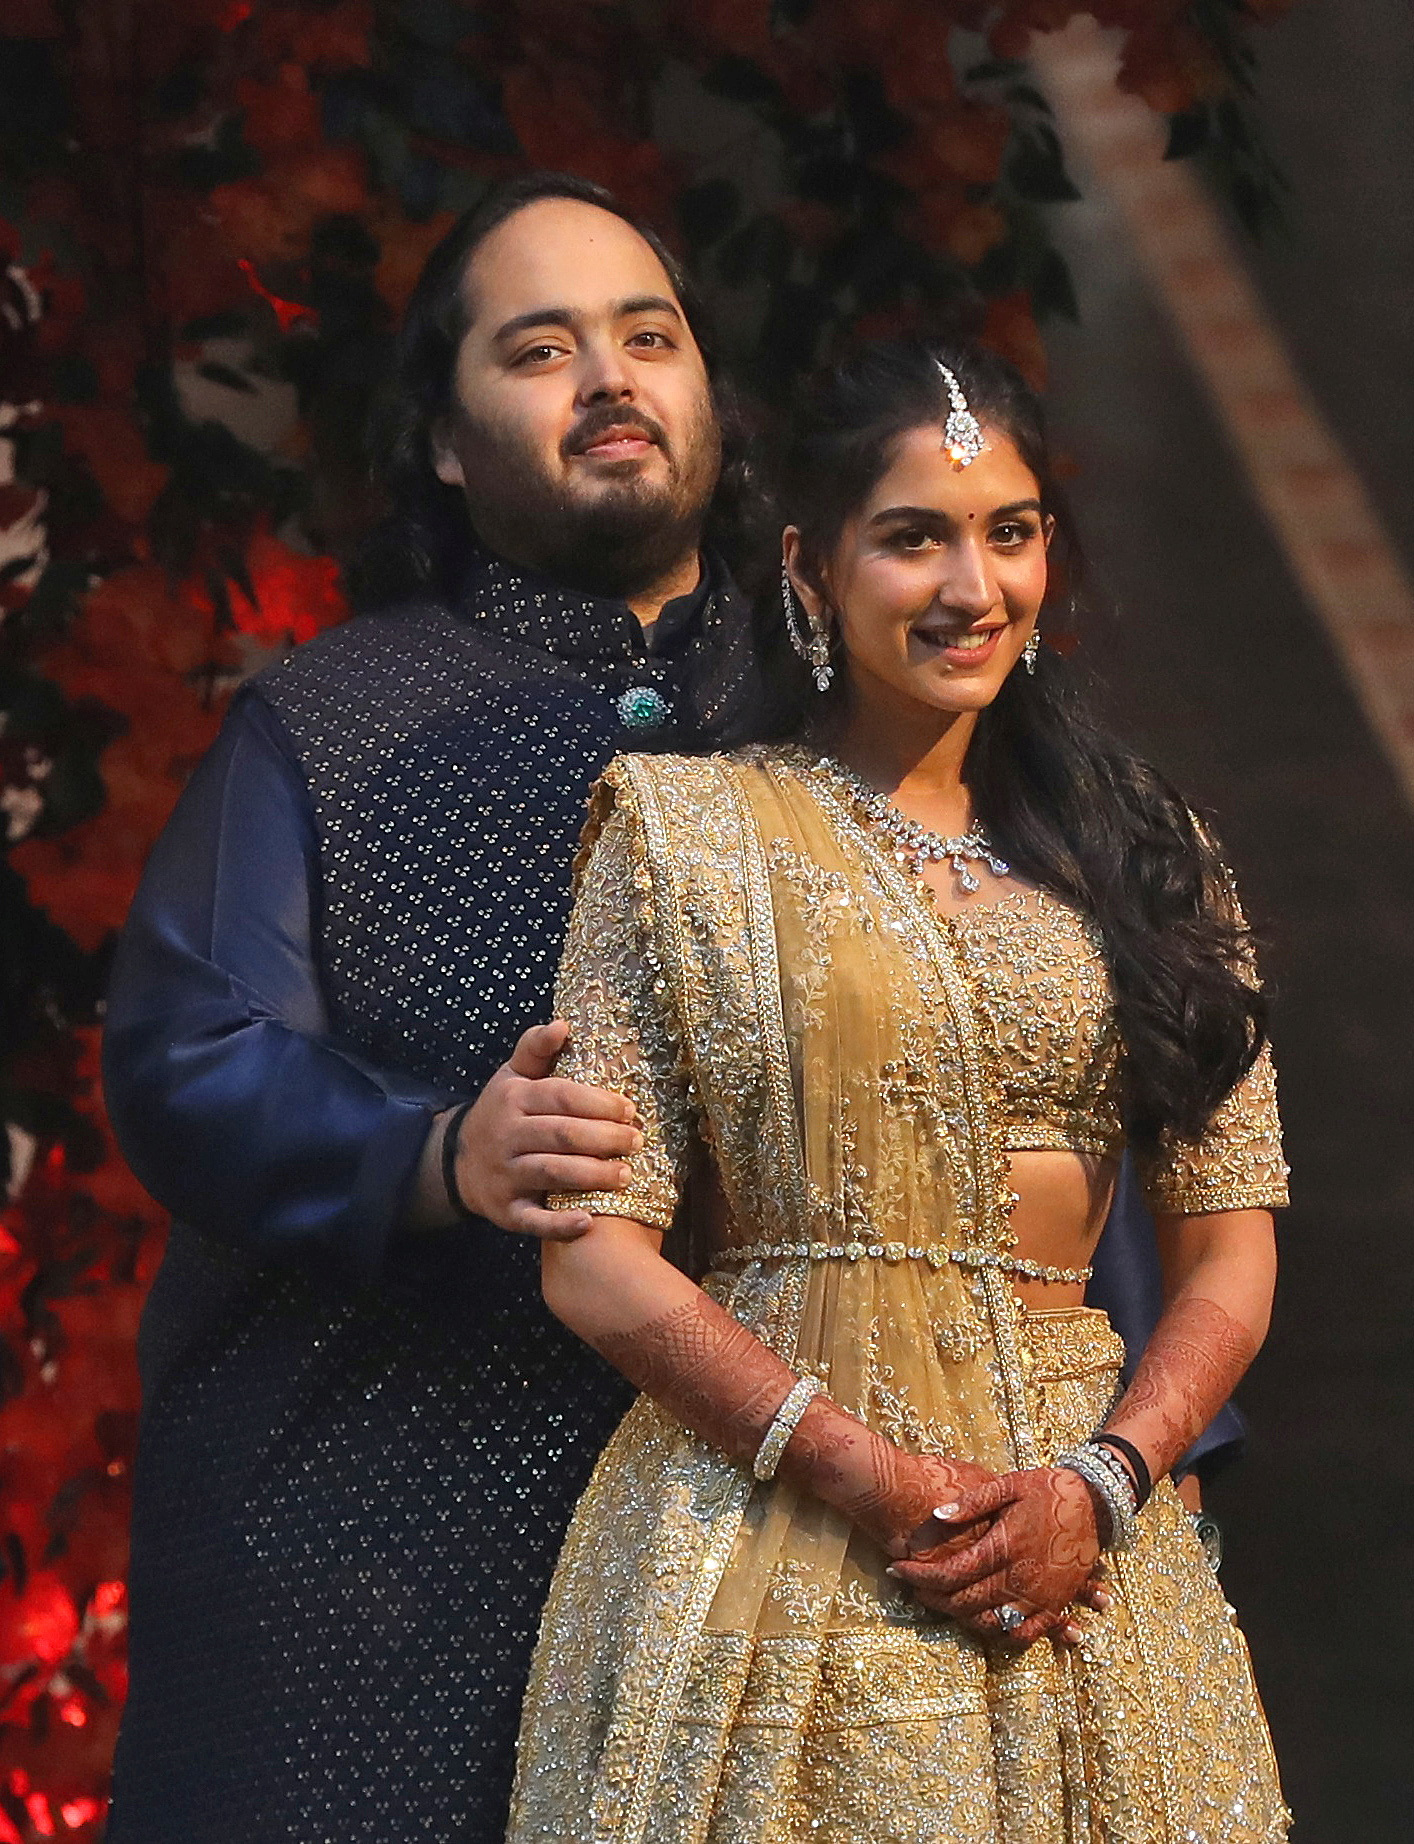 Inside Anant Ambani and Radhika Merchants big Indian wedding image pic